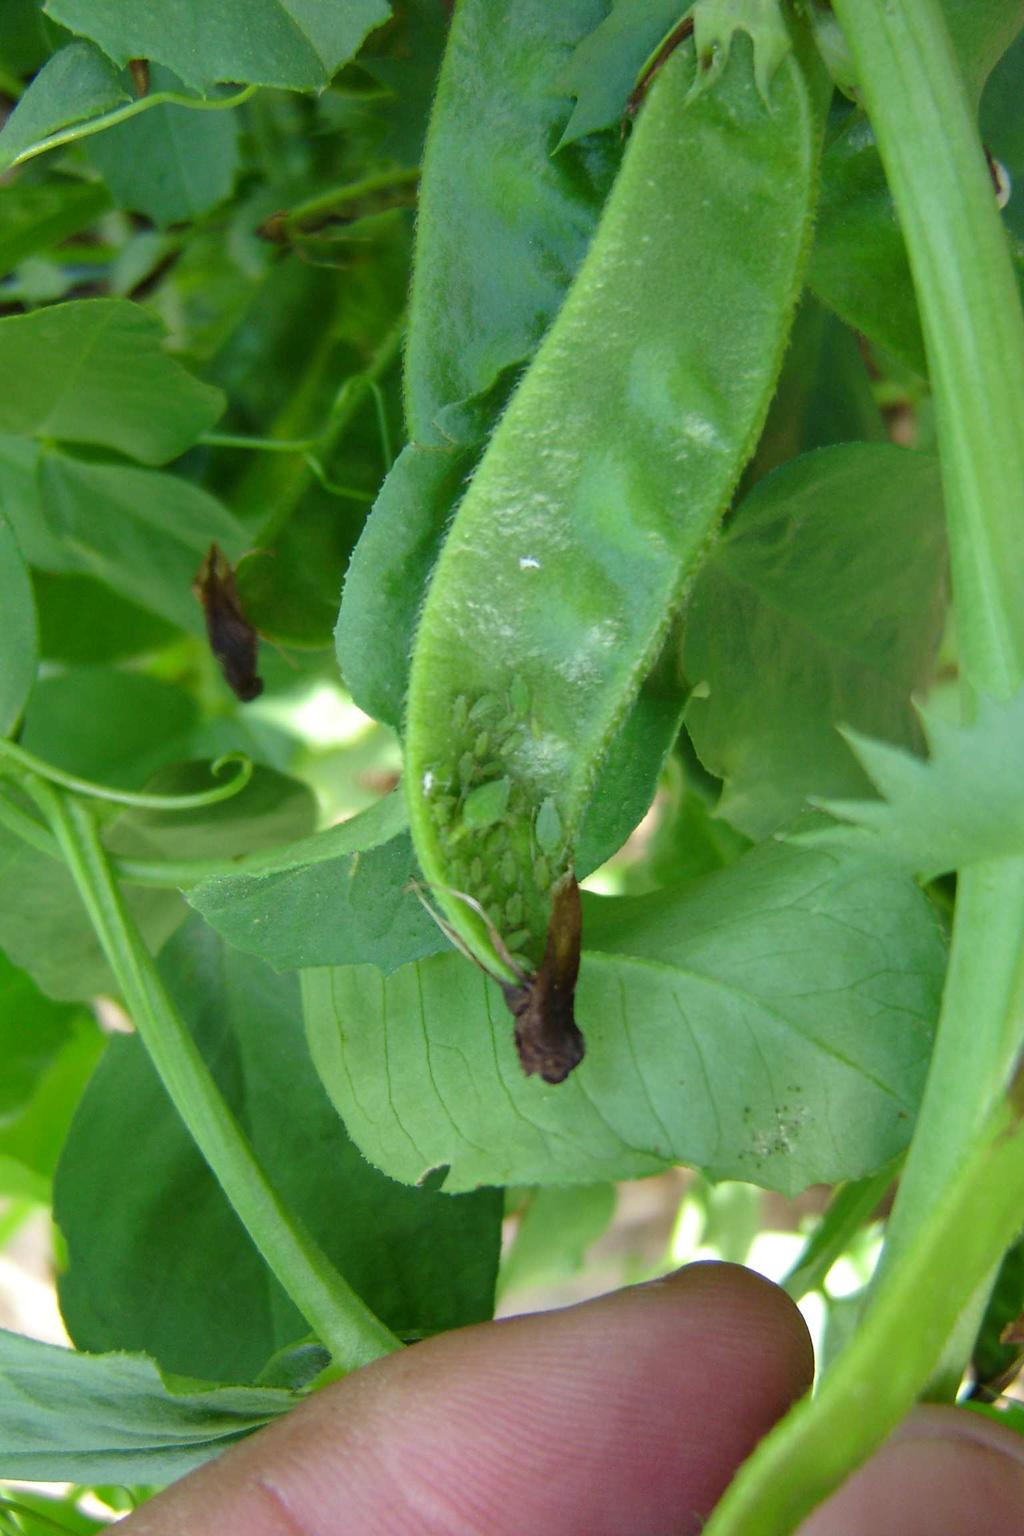 Ésta es una planta parásita, que carece de clorofila, por lo que se nutre a partir de las raíces de la leguminosa, y de esta forma completa su ciclo vital, pudiendo provocar graves daños en el